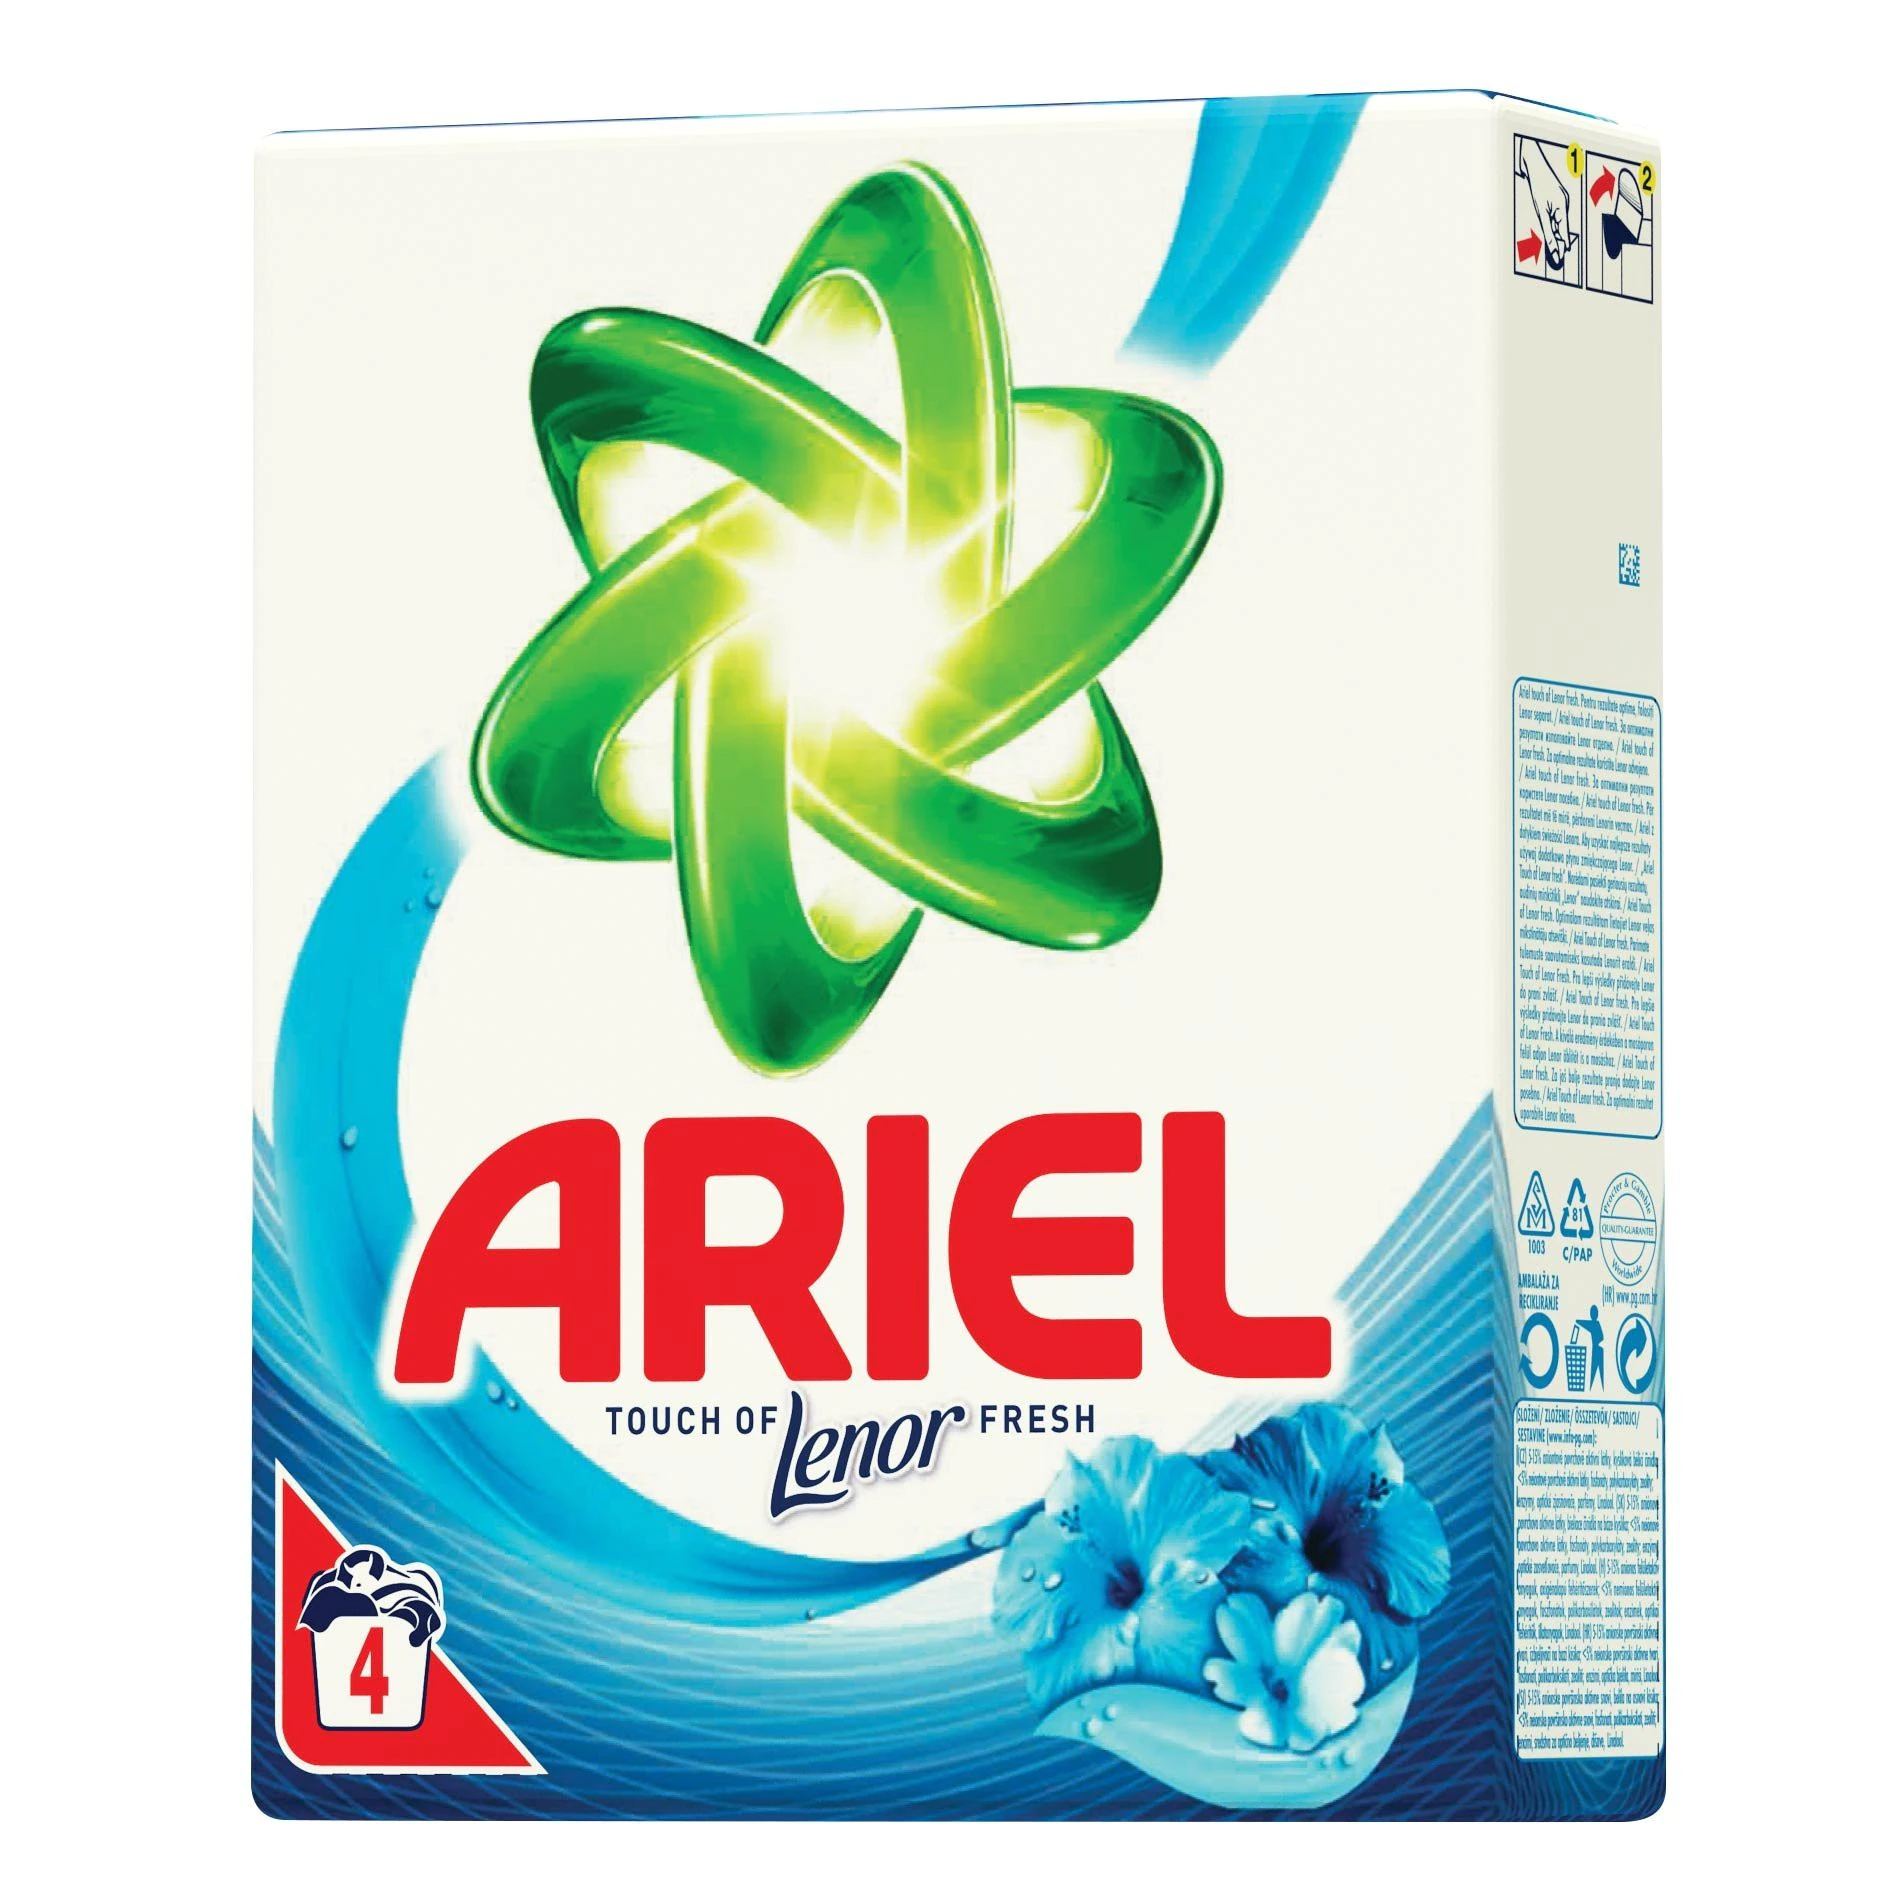 Detergent pudra - ARIEL DETERGENT AUTOMAT LENOR COLOR 300G 11/BAX, lucidiusmarket.ro